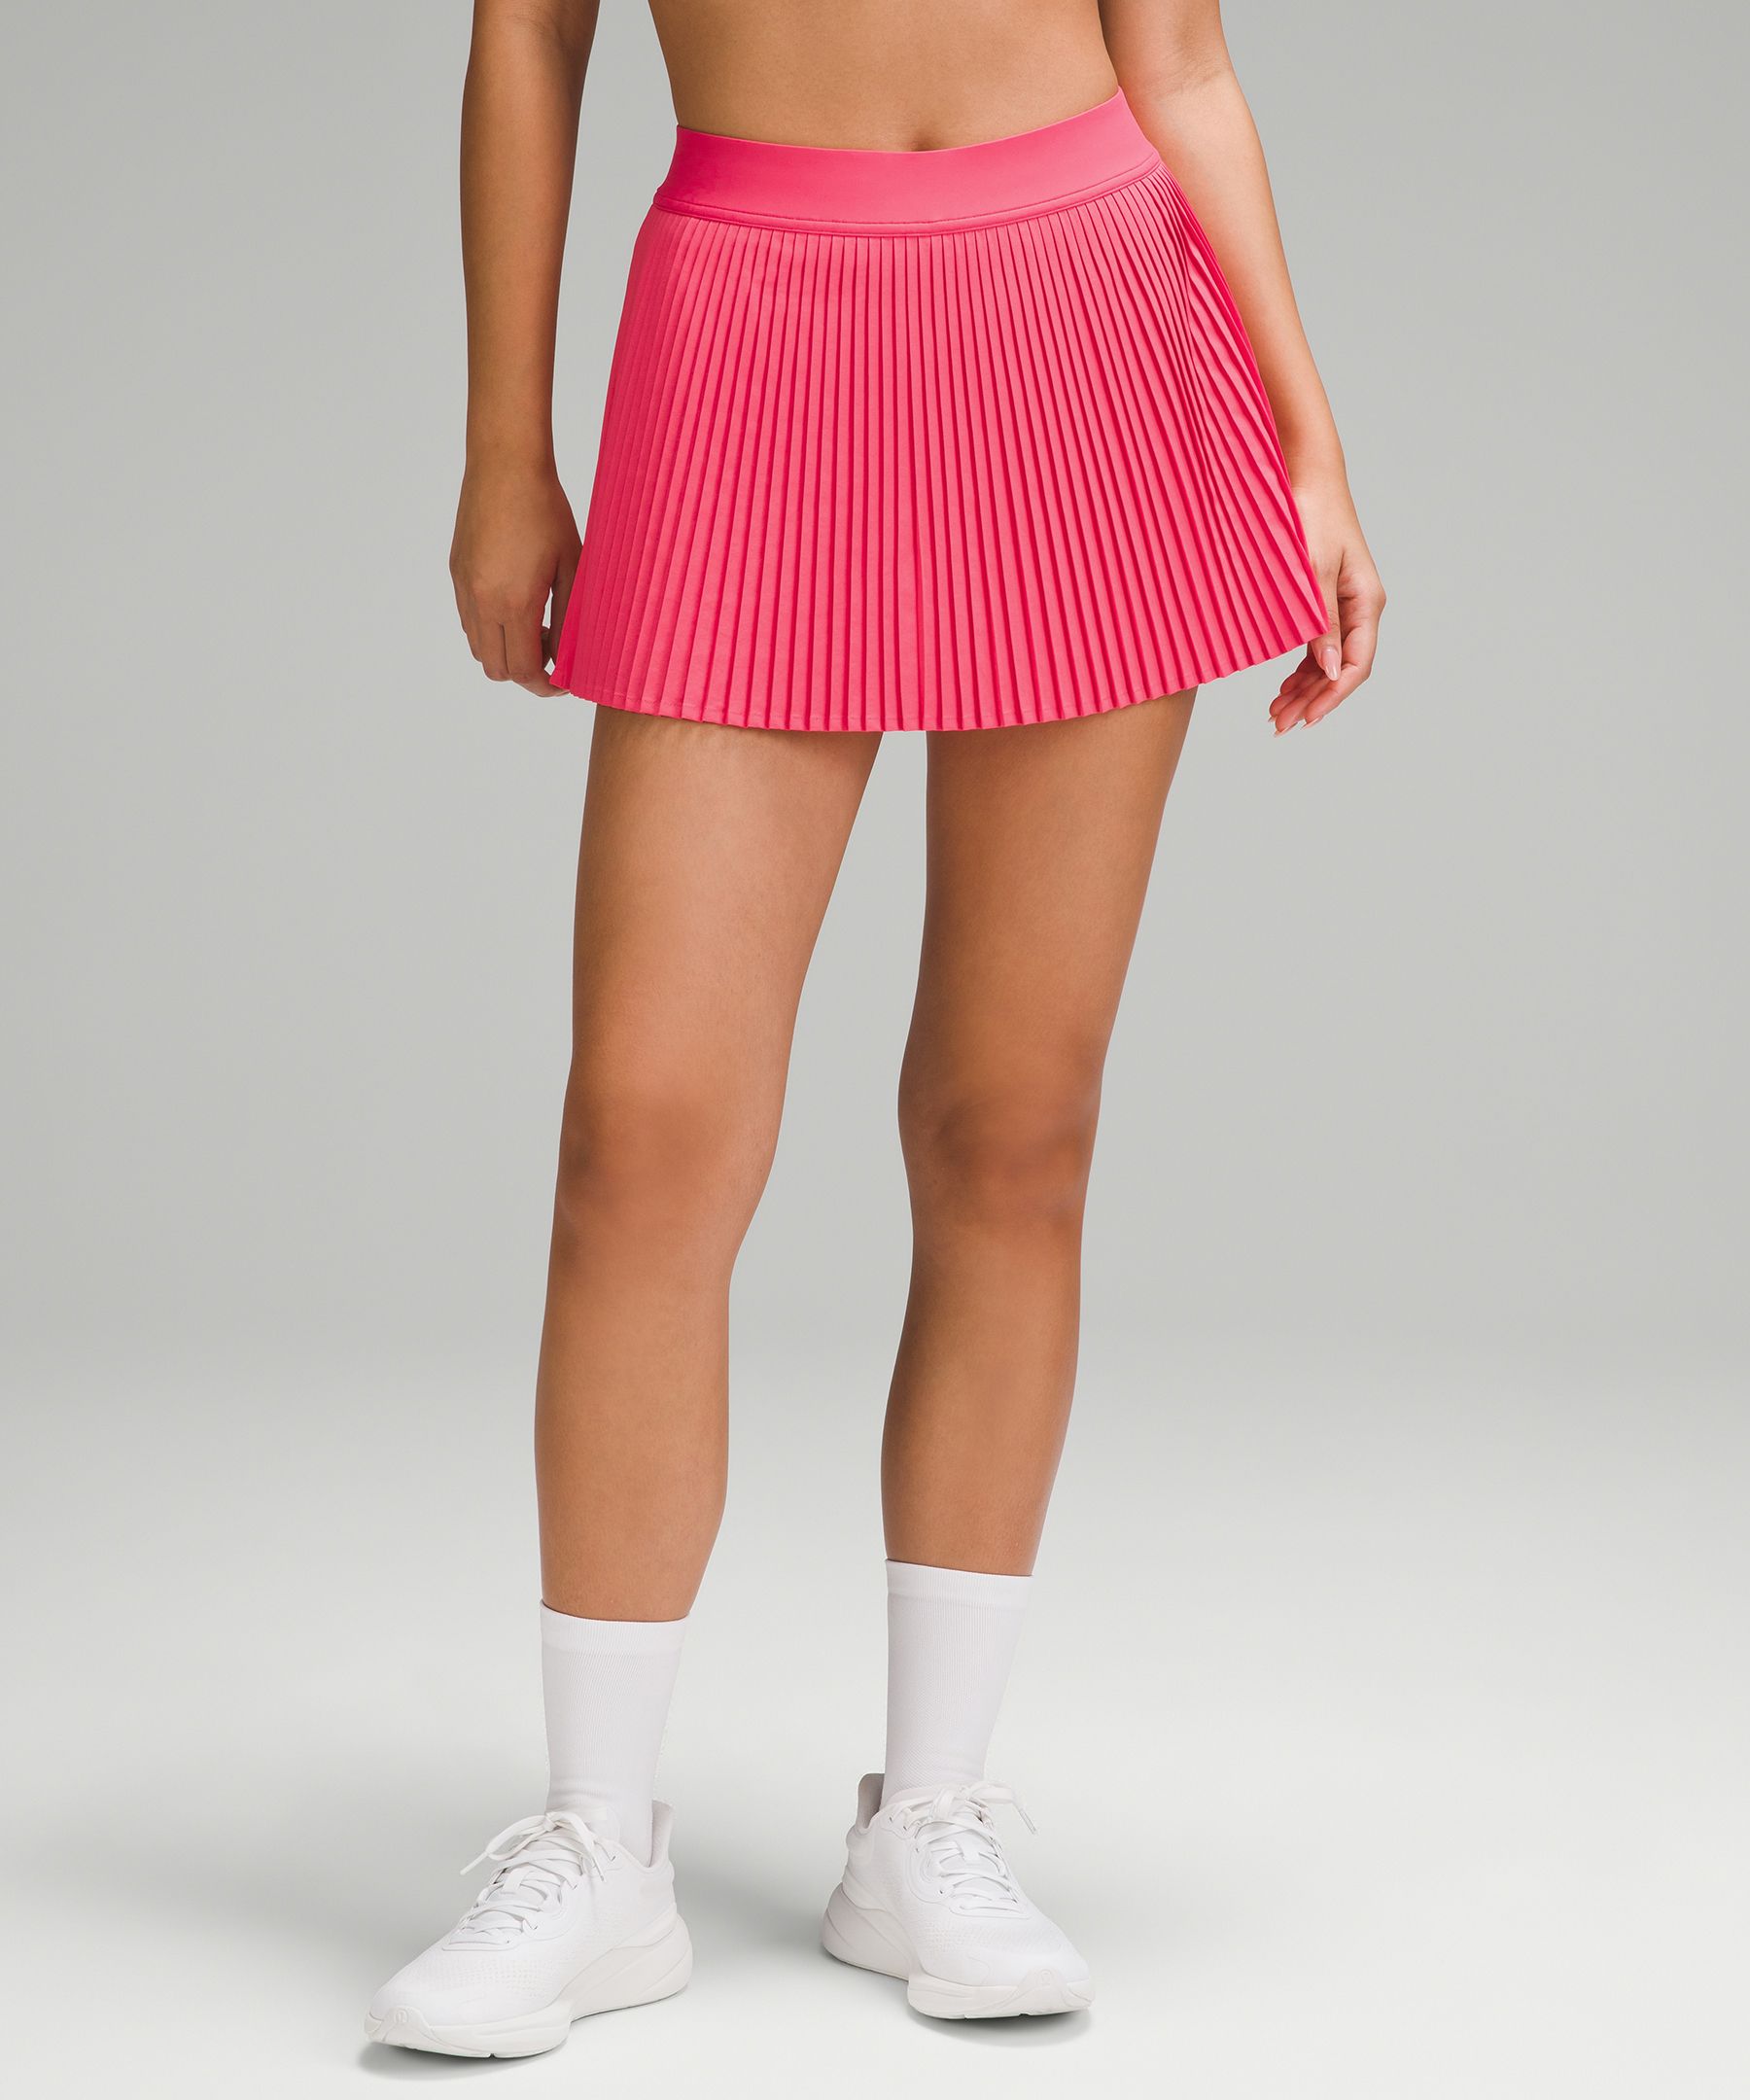 Lululemon athletica Side-Pleat High-Rise Tennis Skirt, Women's Skirts